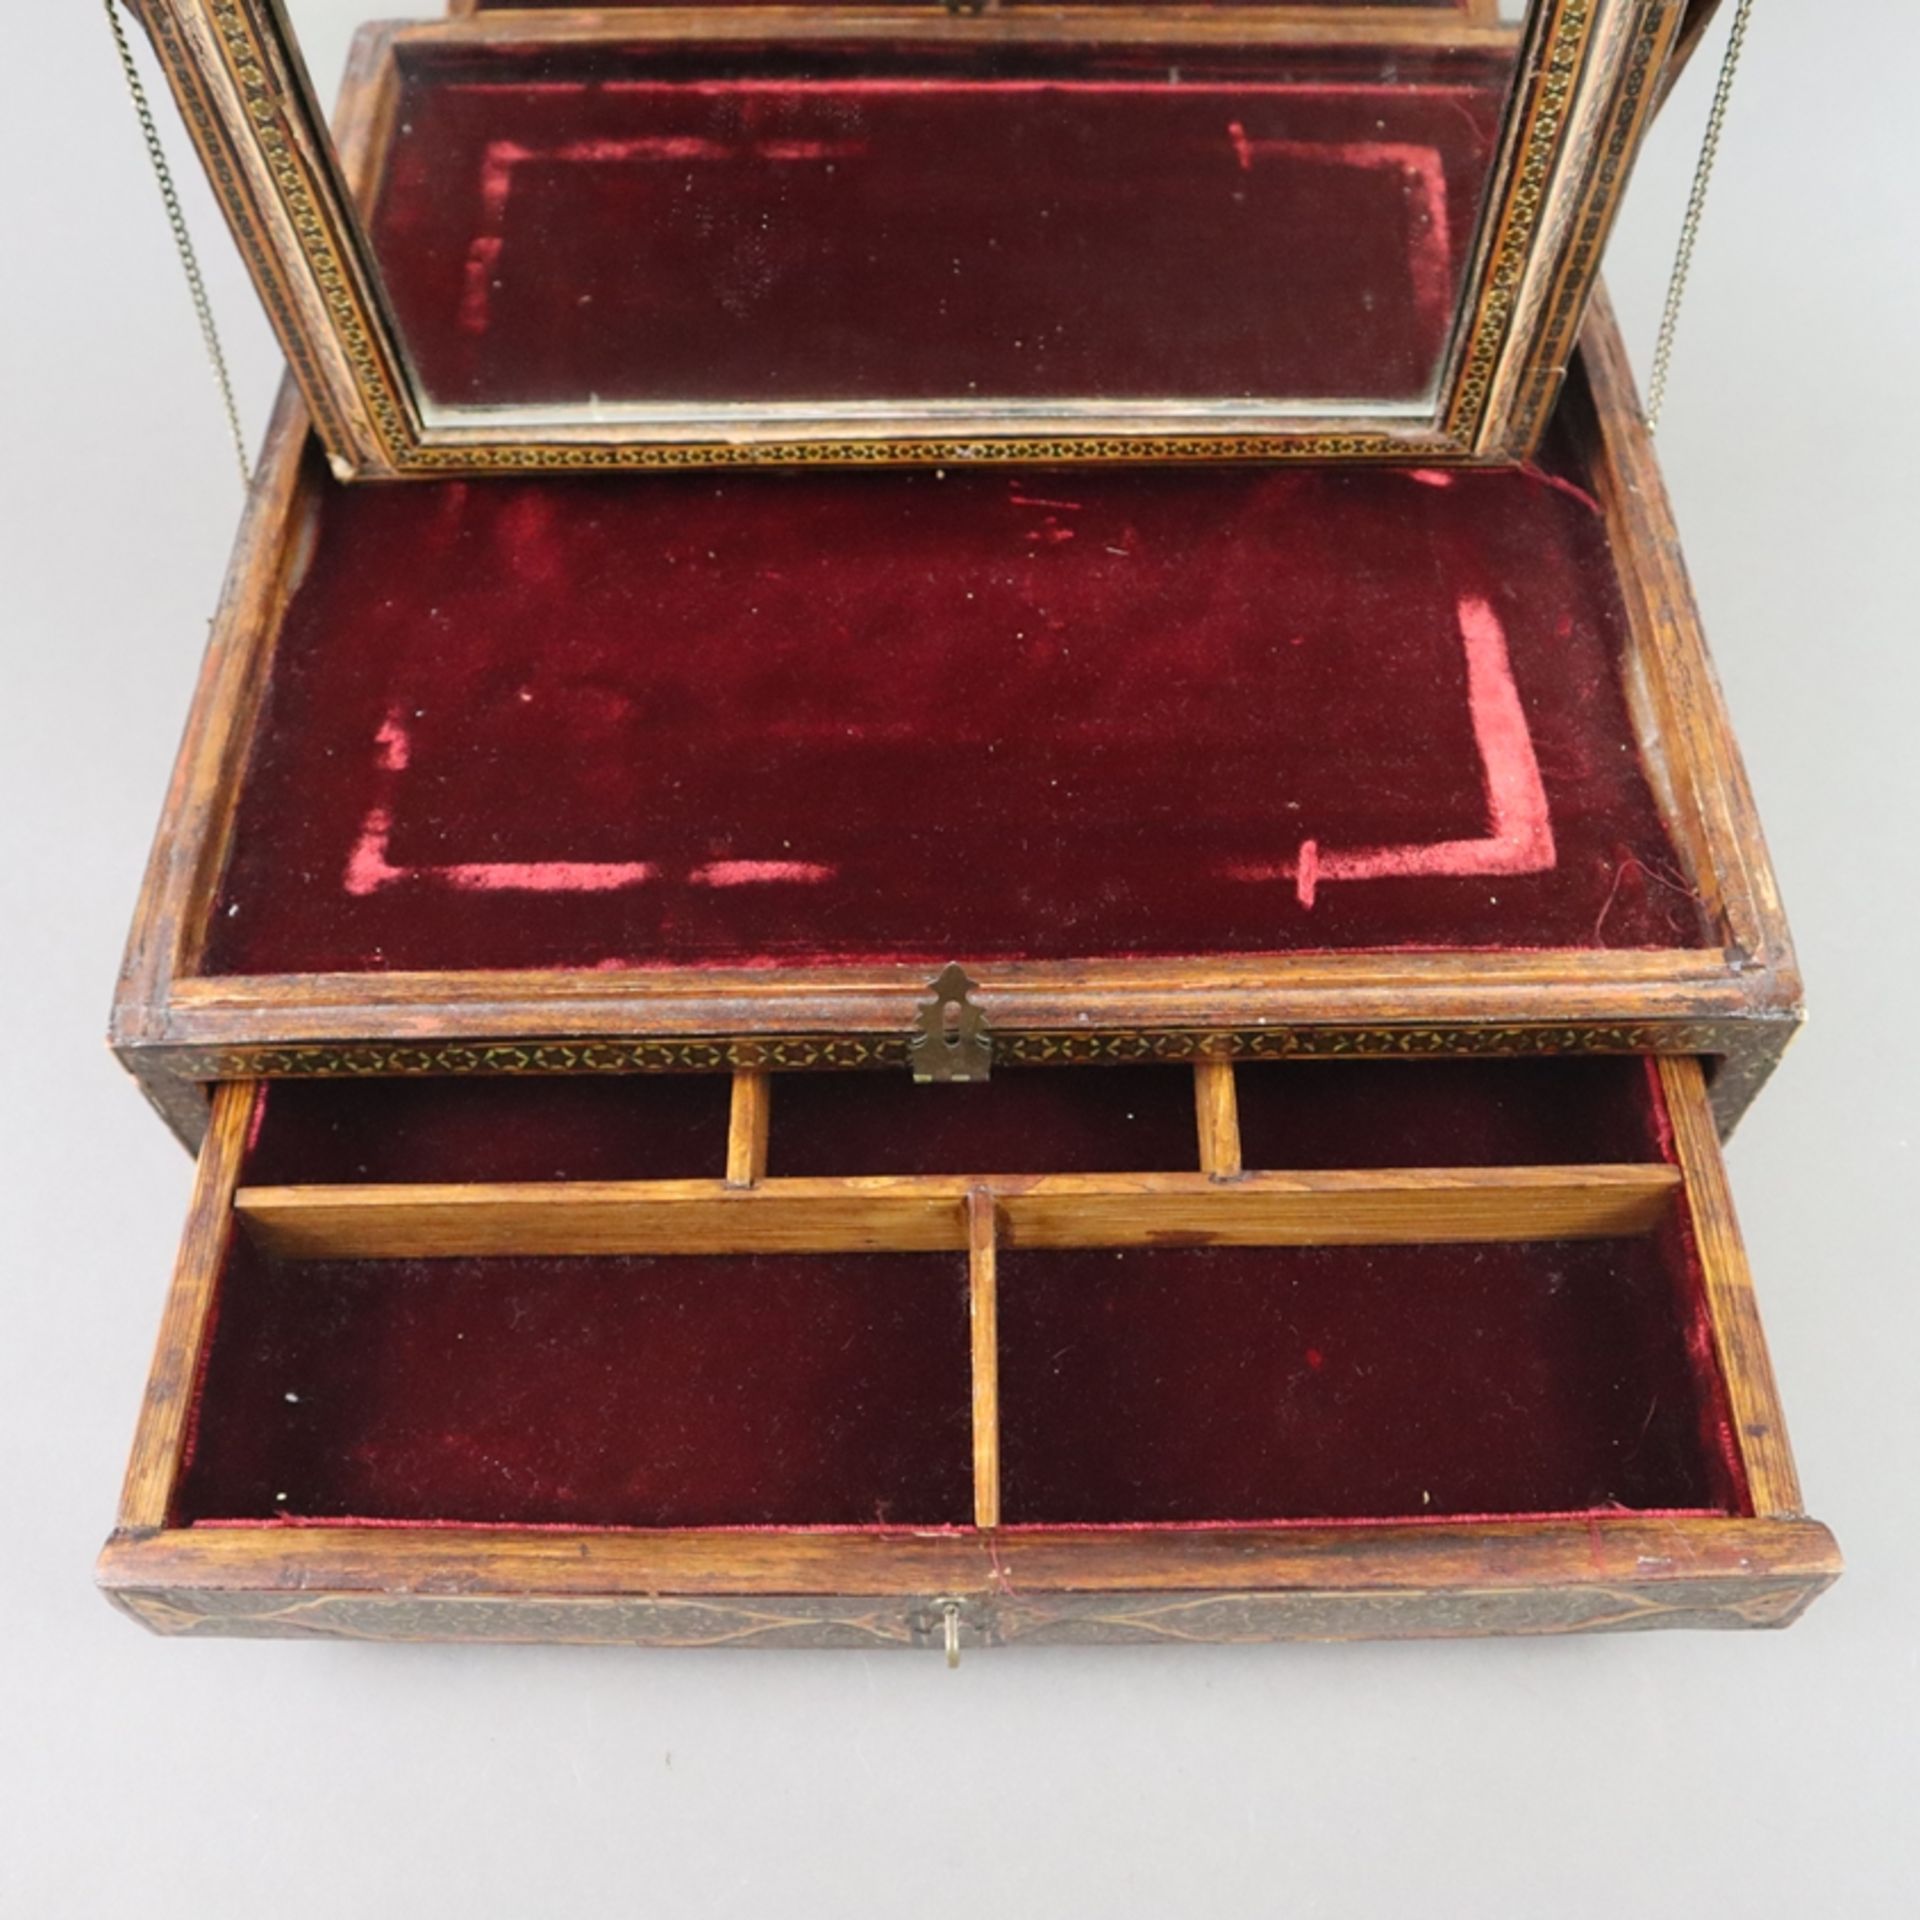 Spiegelschatulle - Persien, große Holzkassette mit durch Ketten gesichertem Scharnierdeckel, intars - Image 4 of 8